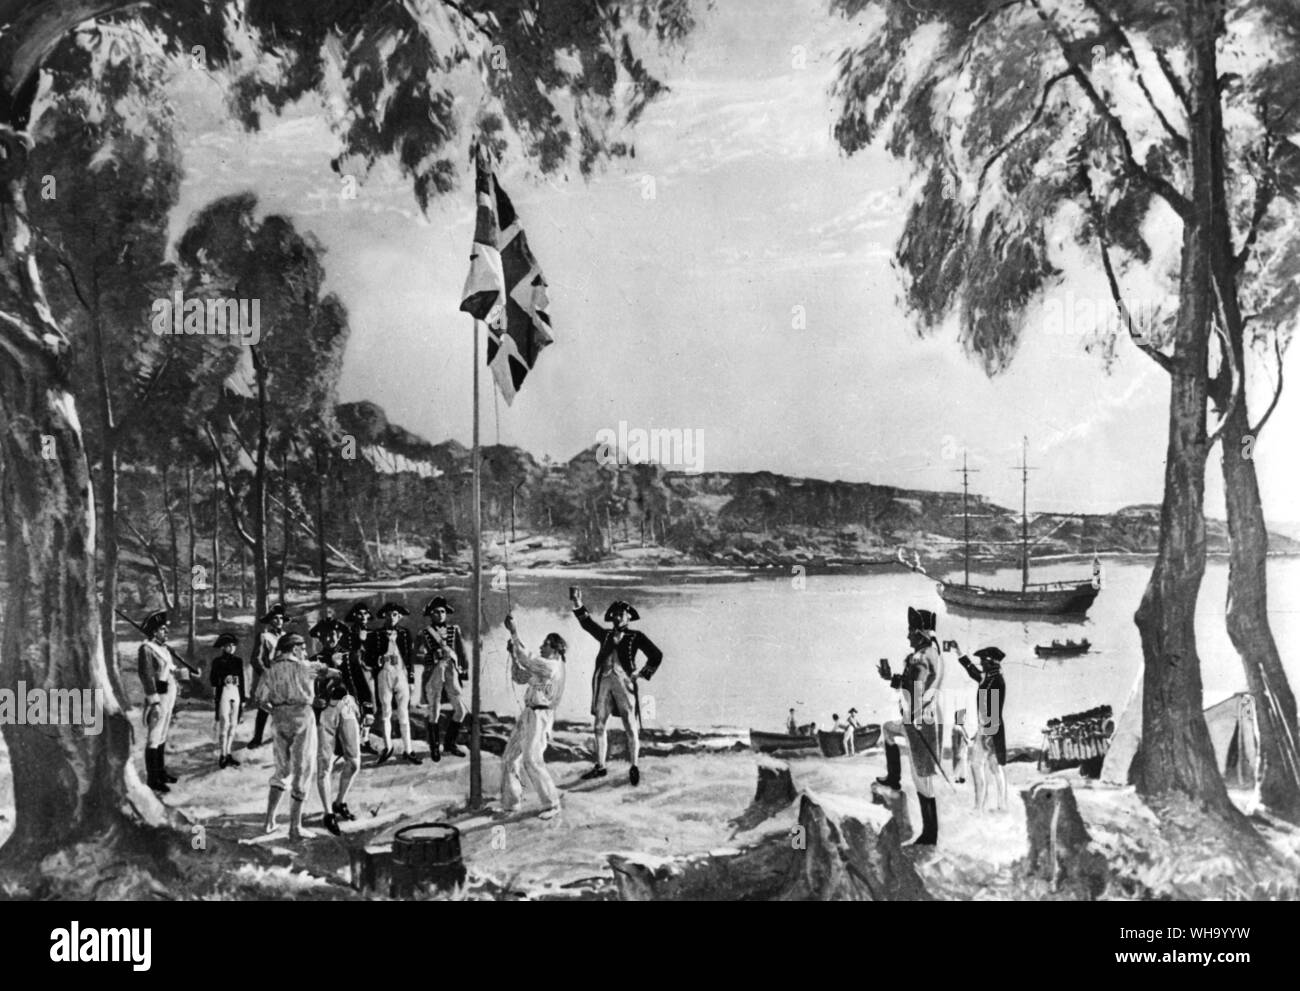 La Fondation de l'Australie. Scène au déploiement du drapeau britannique à Sydney Cove le 26 janvier 1788. Le capitaine Arthur Phillip, premier gouverneur de la colonie de Nouvelle-Galles du Sud, et les agents et garde côtière de marines sont présentés sur de boire de la santé du roi George III. Le premier jour de l'Australie. Banque D'Images